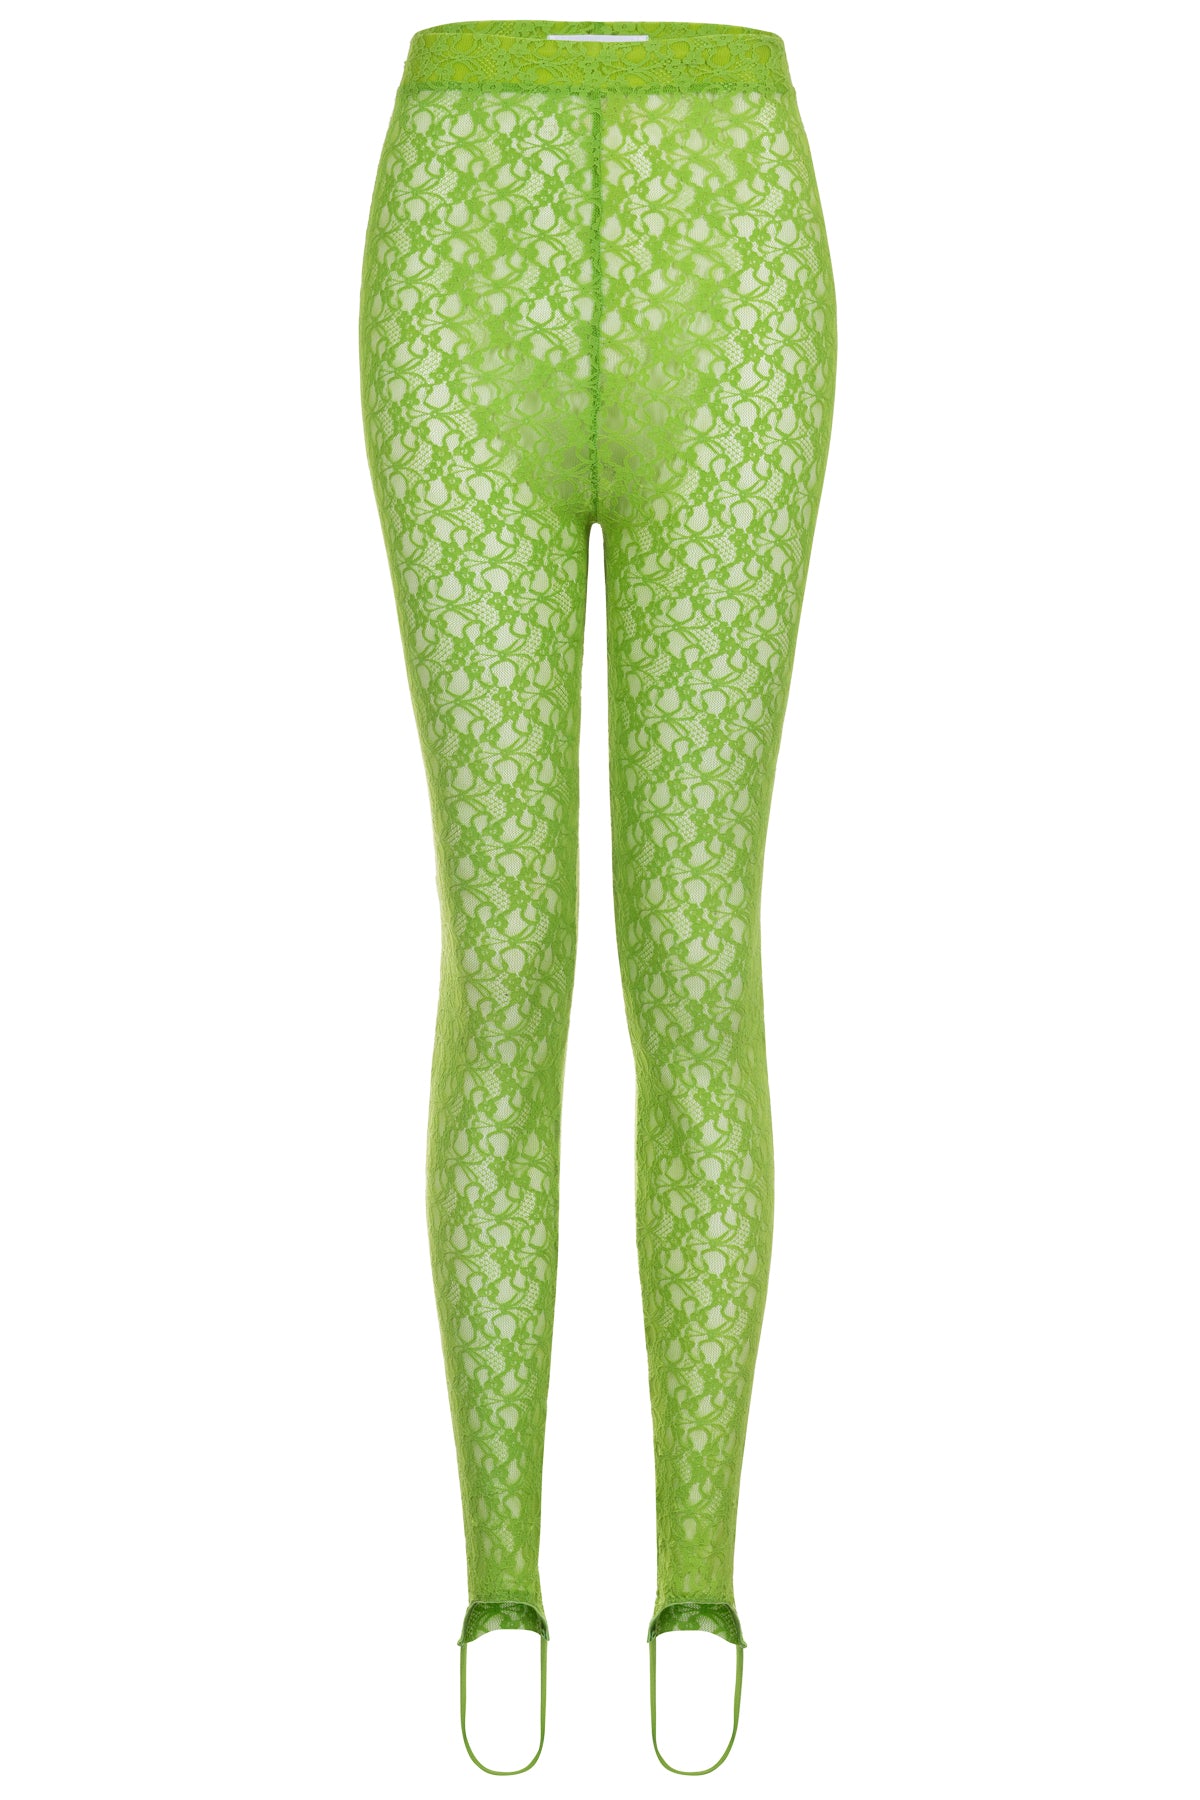 Sadie Lime Green Lace Stirrup Leggings- Made to Order